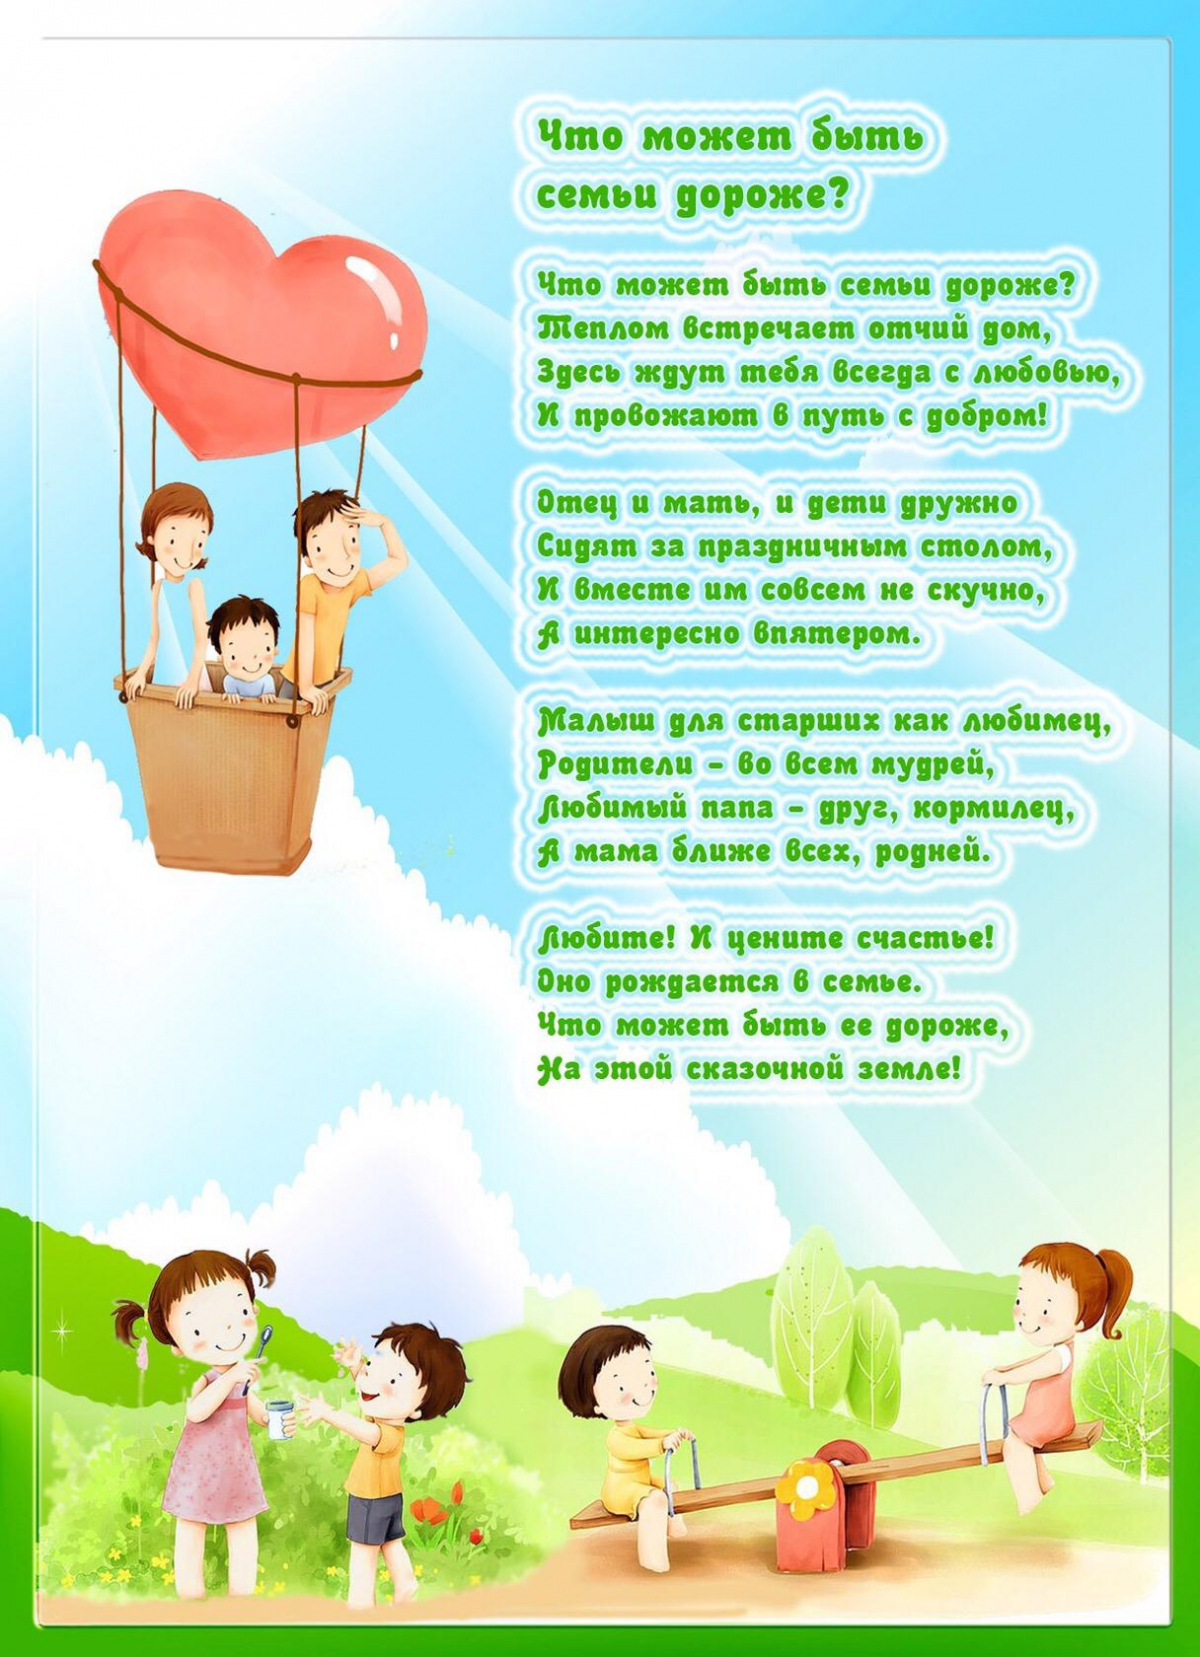 Оформление уголка год семьи. Международный день семьи. День семьи 15 мая. День семьи в детском саду. Международный день семь.